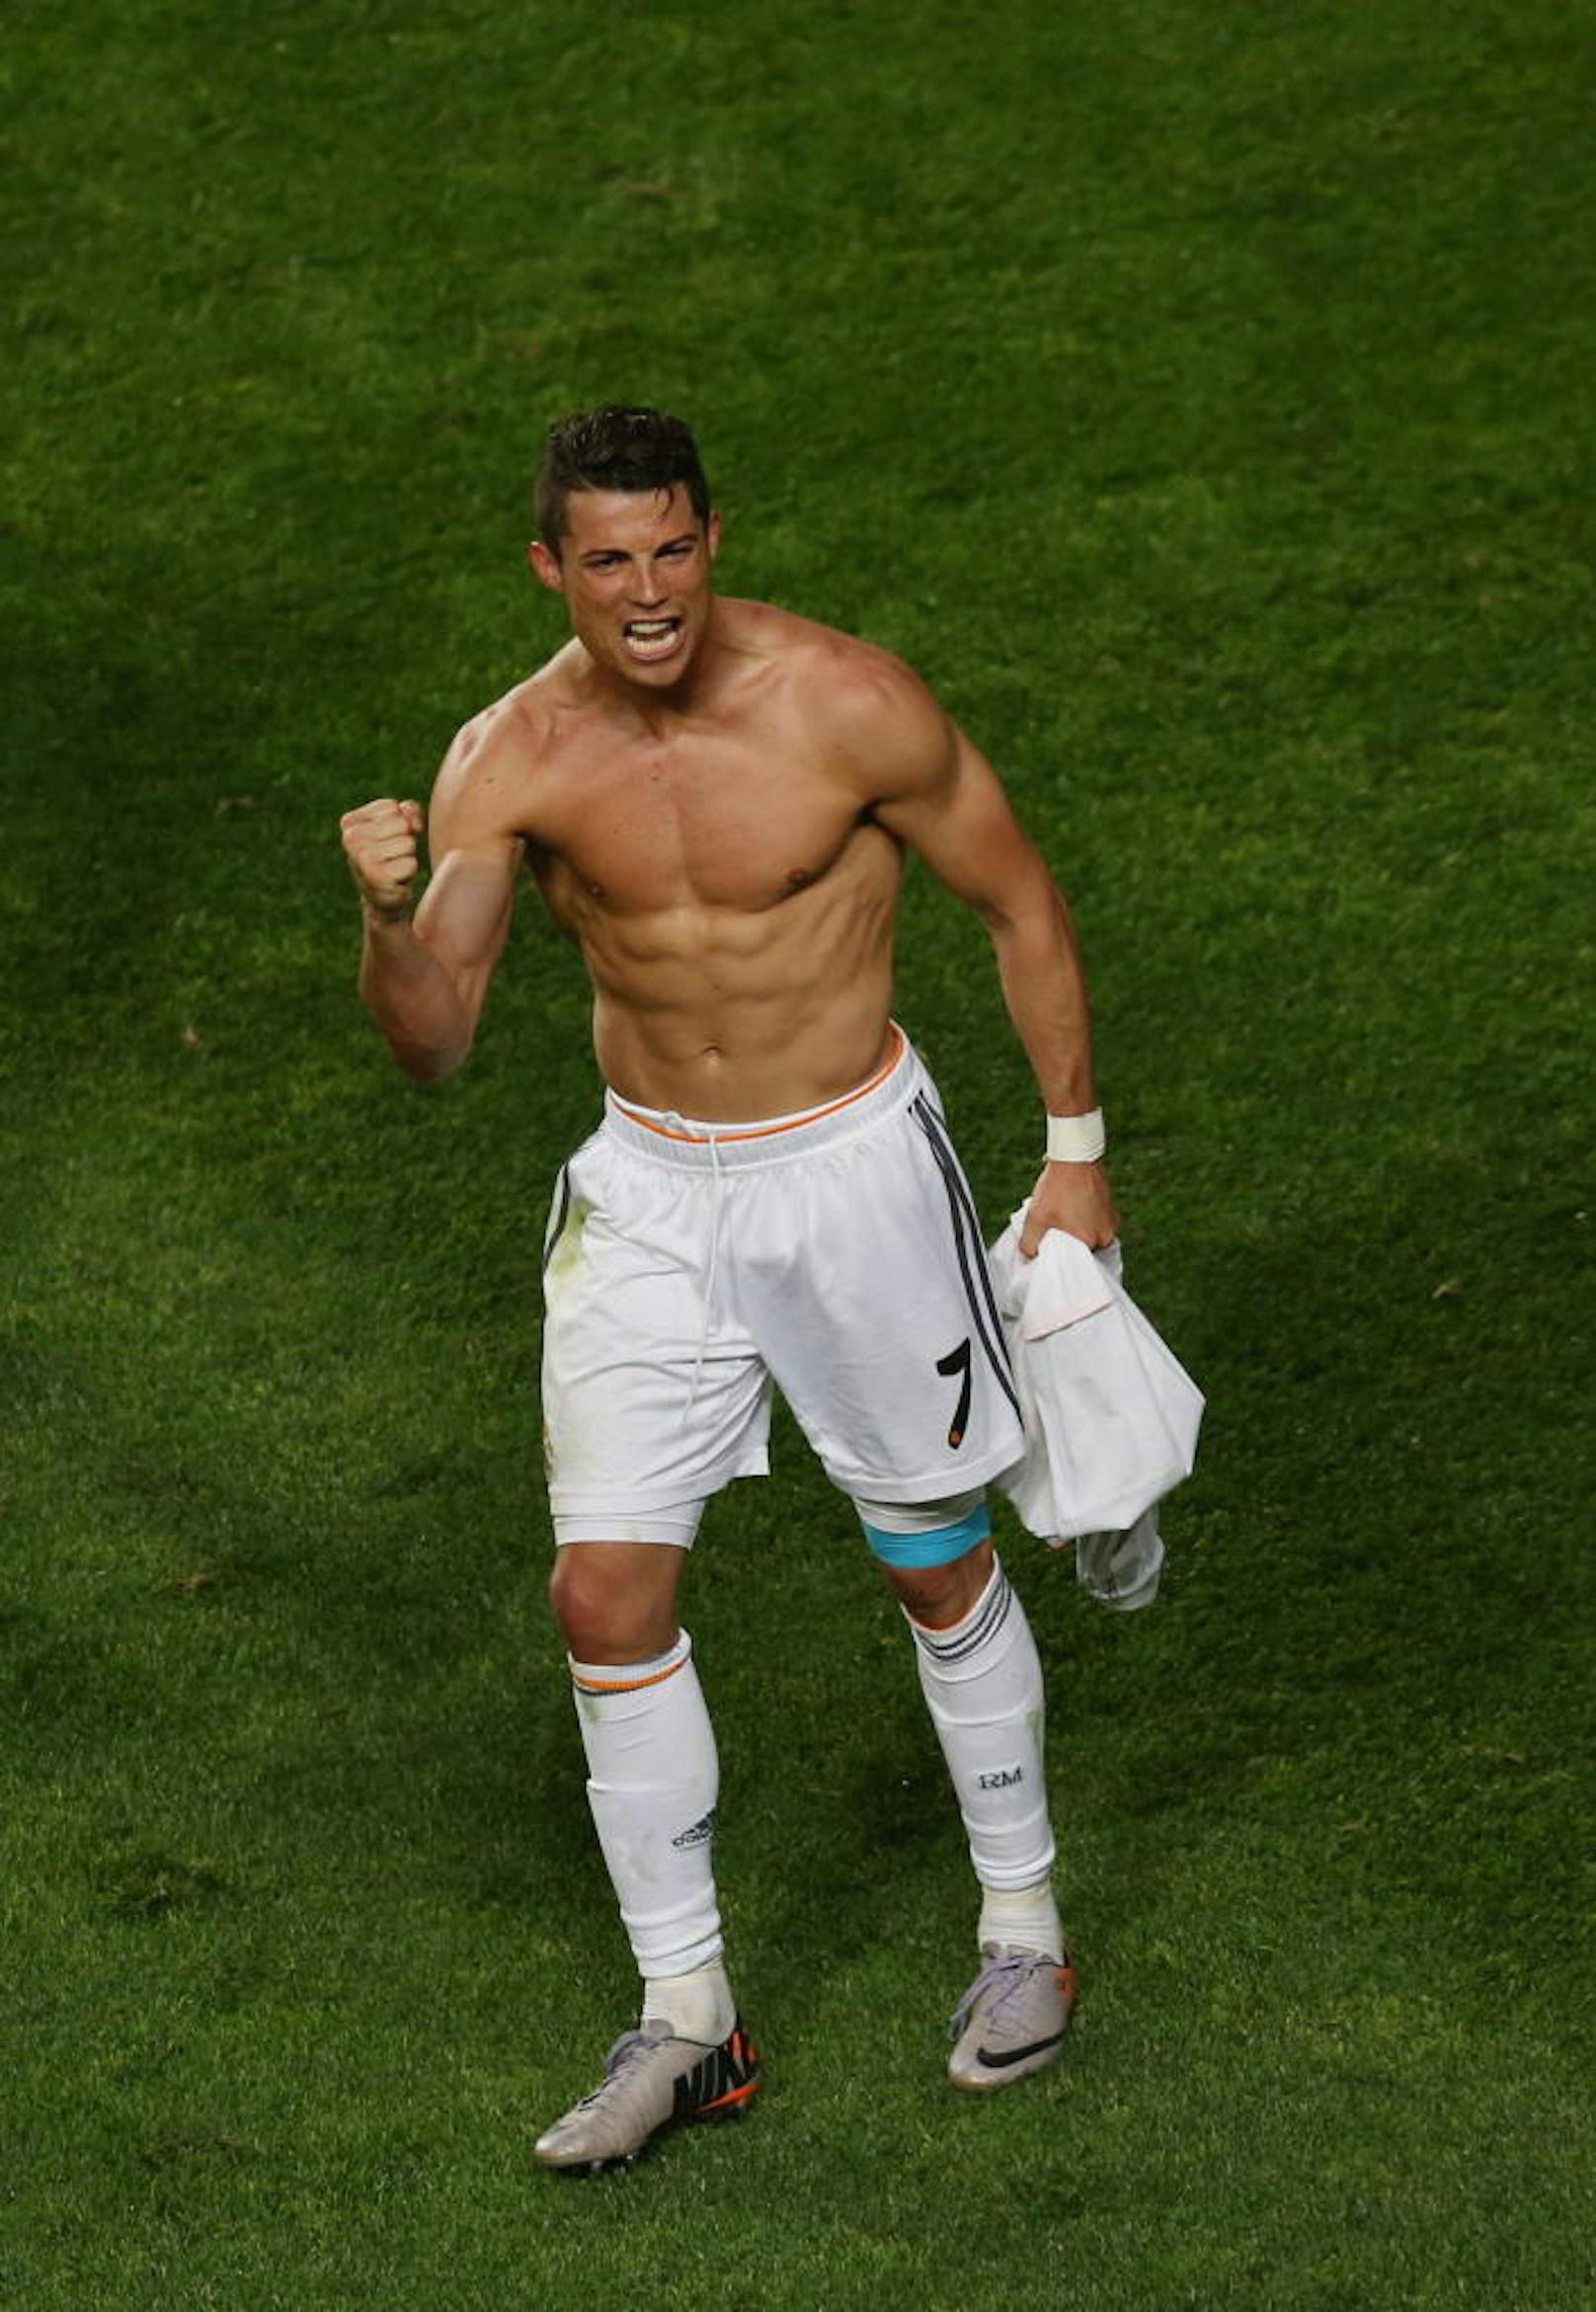 Ronaldo hatte dabei maßgeblichen Anteil an "La Decima". Mit 17 Toren schoss er Real fast im Alleingang zum Titel und stellte nebenbei noch den Rekord für die meisten CL-Tore in einer Saison auf.